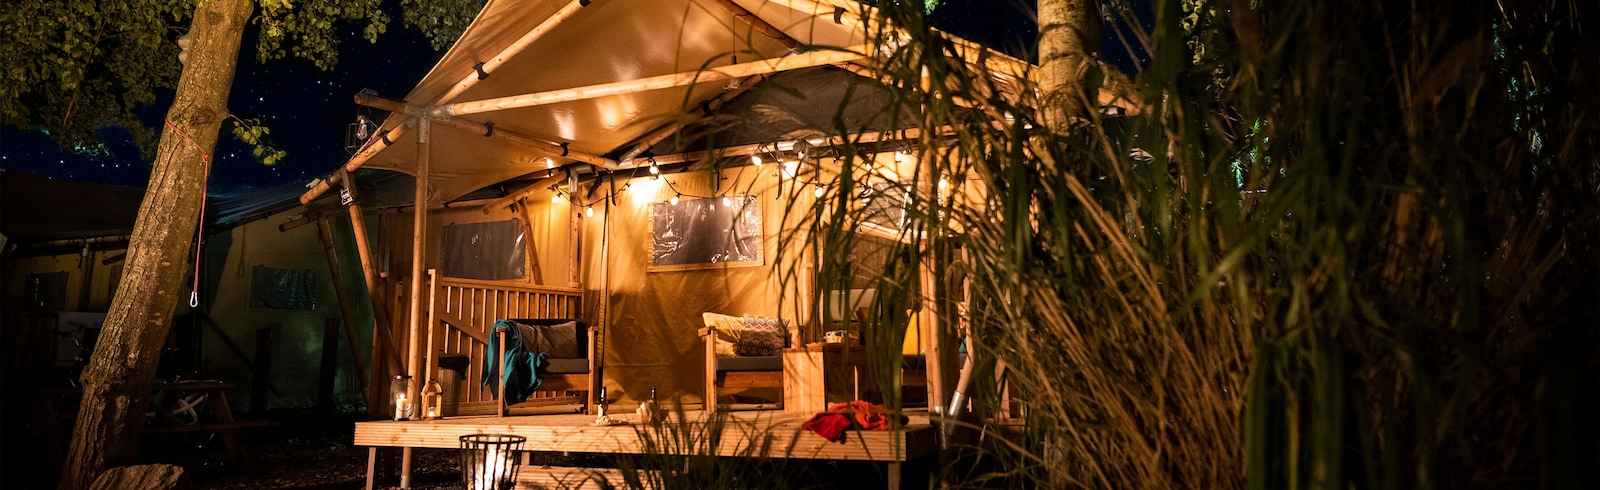 Boek een safaritent bij Roompot en geniet van een eche glamping vakantie in Nederland